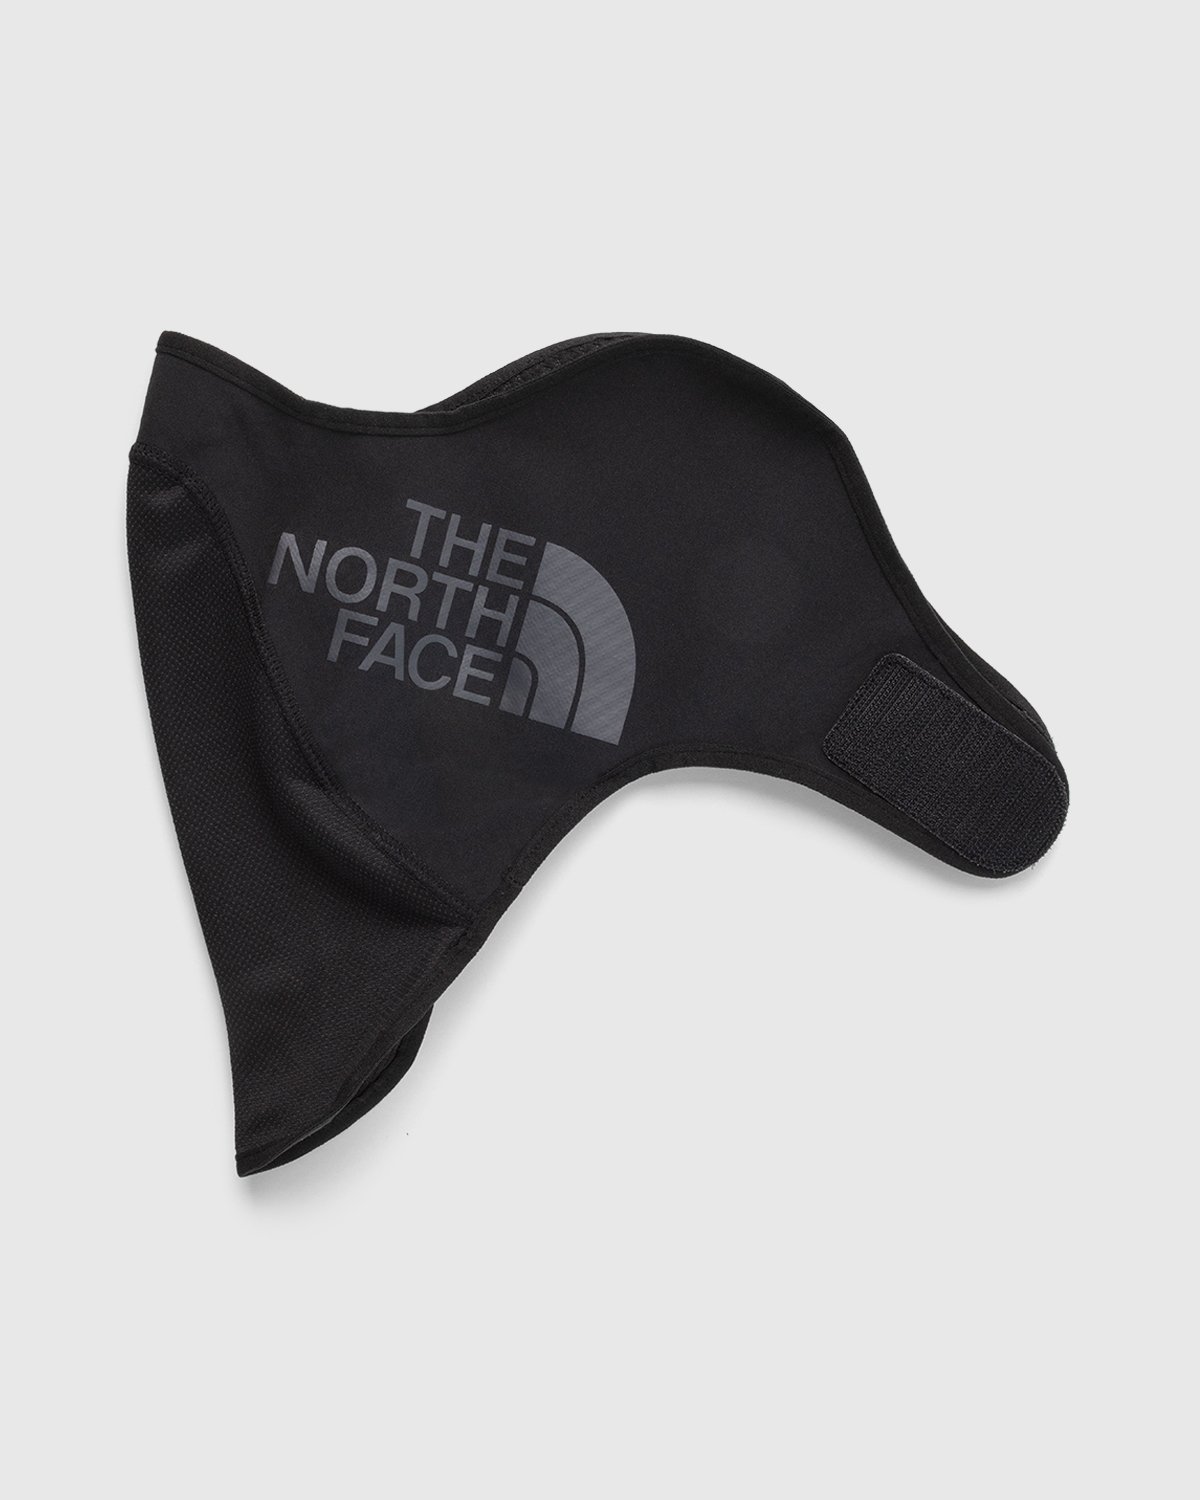 The North Face - Shredder Ski Mask Black - Accessories - Black - Image 2